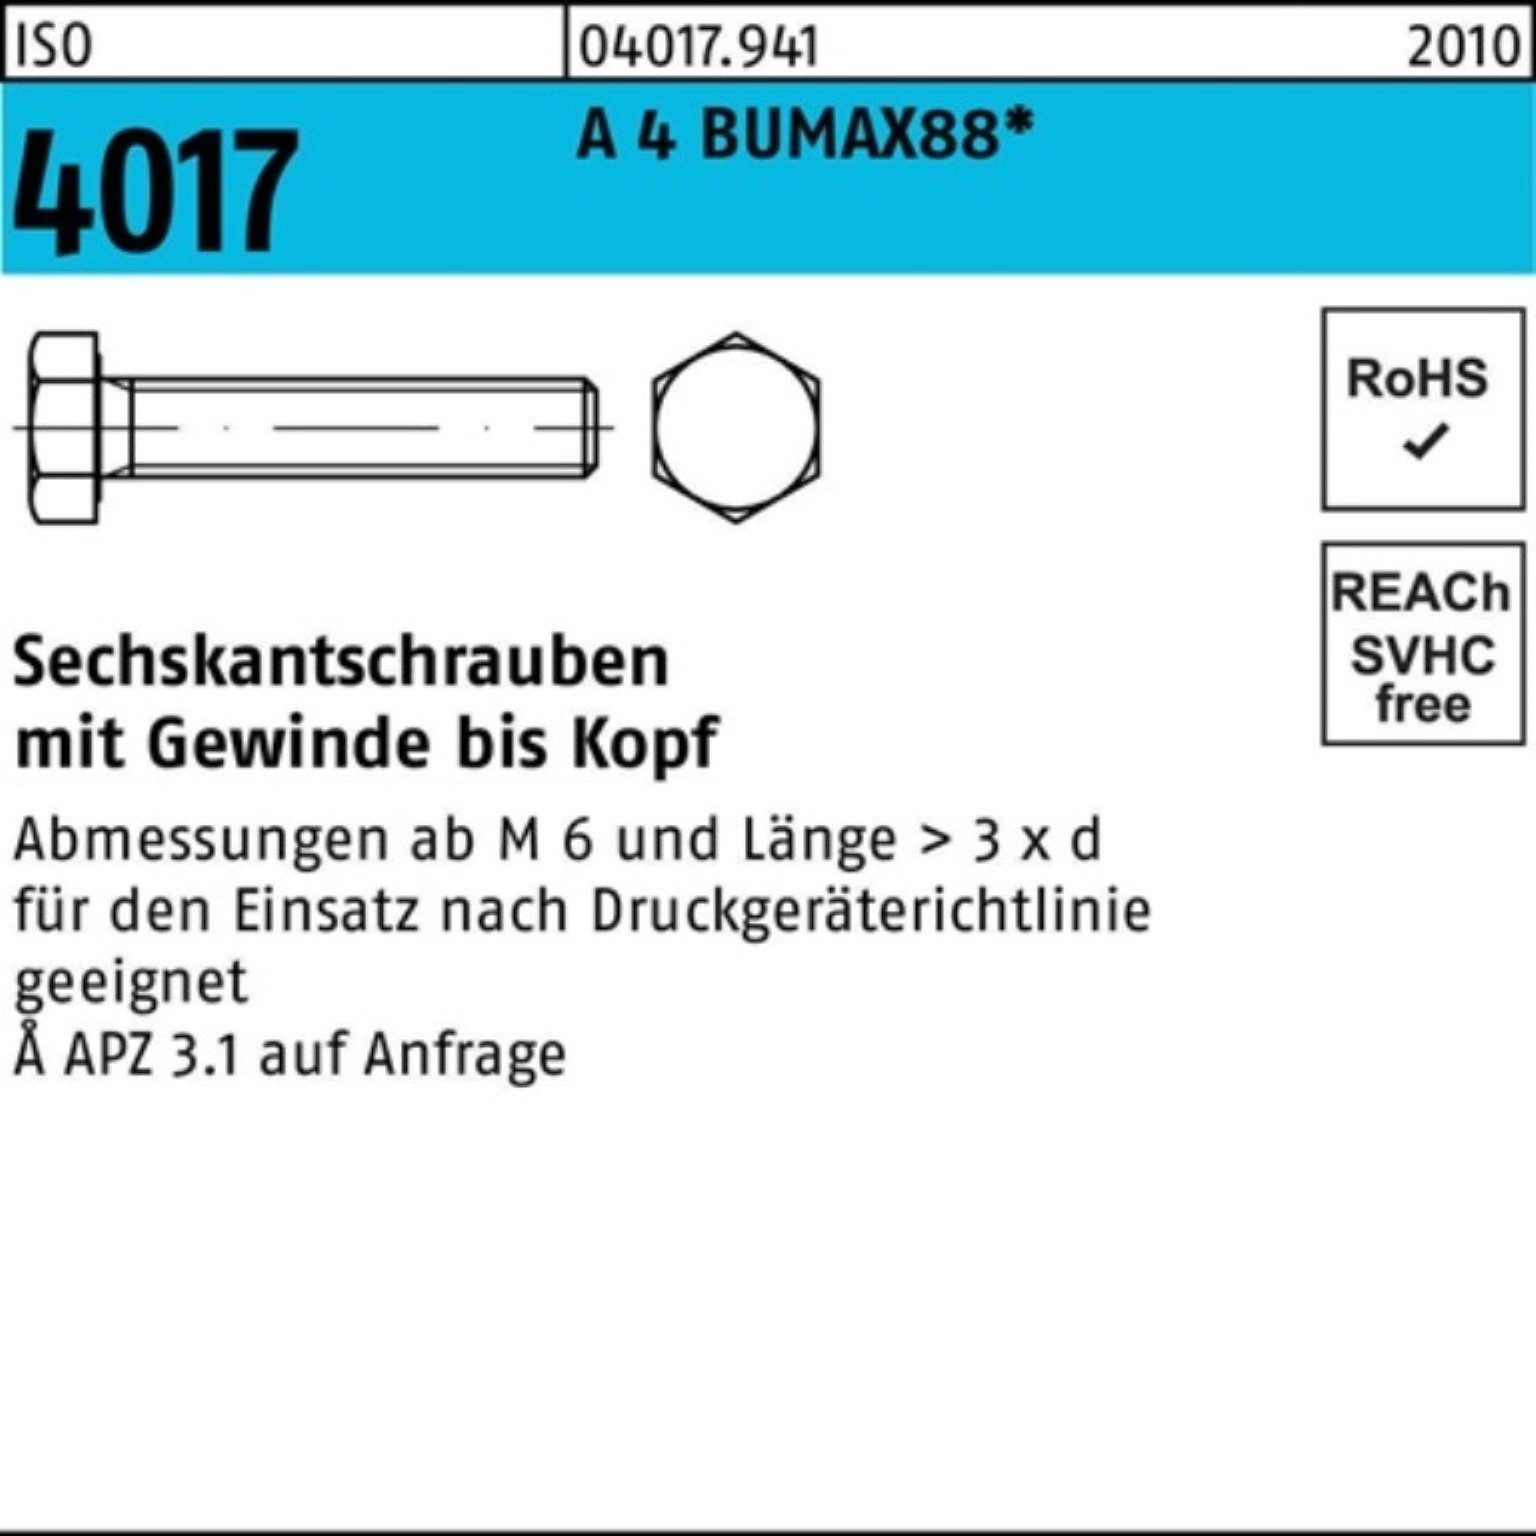 BUMAX88 A 4 100 ISO 100er Stück VG Sechskantschraube 4017 Pack 25 Bufab Sechskantschraube M5x